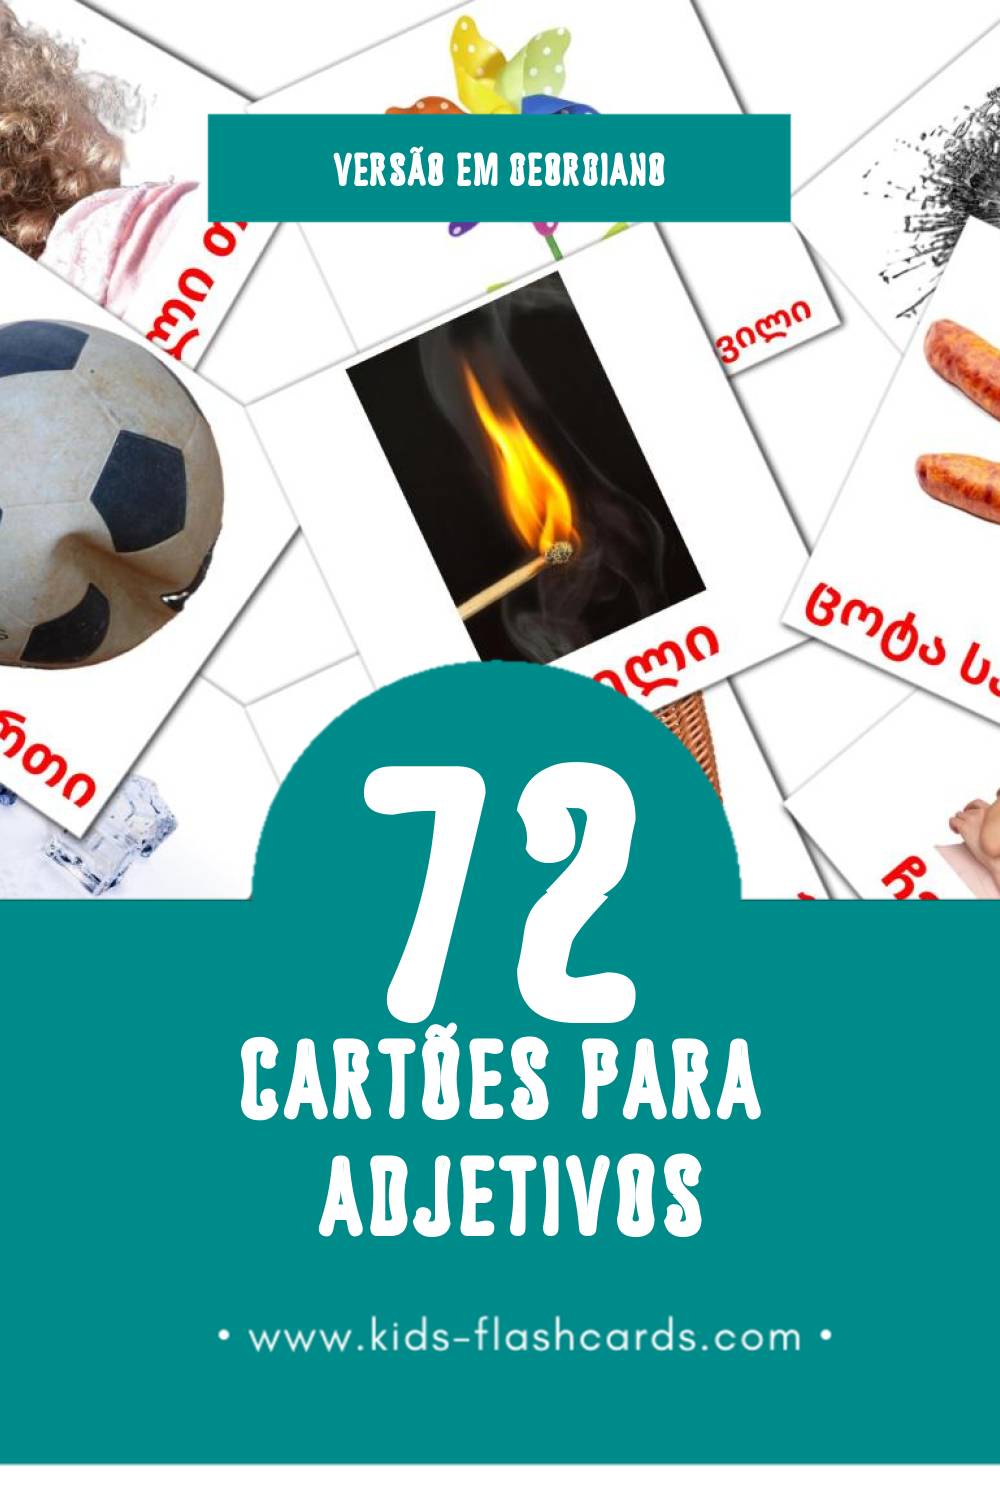 Flashcards de საწინააღმდეგო ზმნები Visuais para Toddlers (72 cartões em Georgiano)